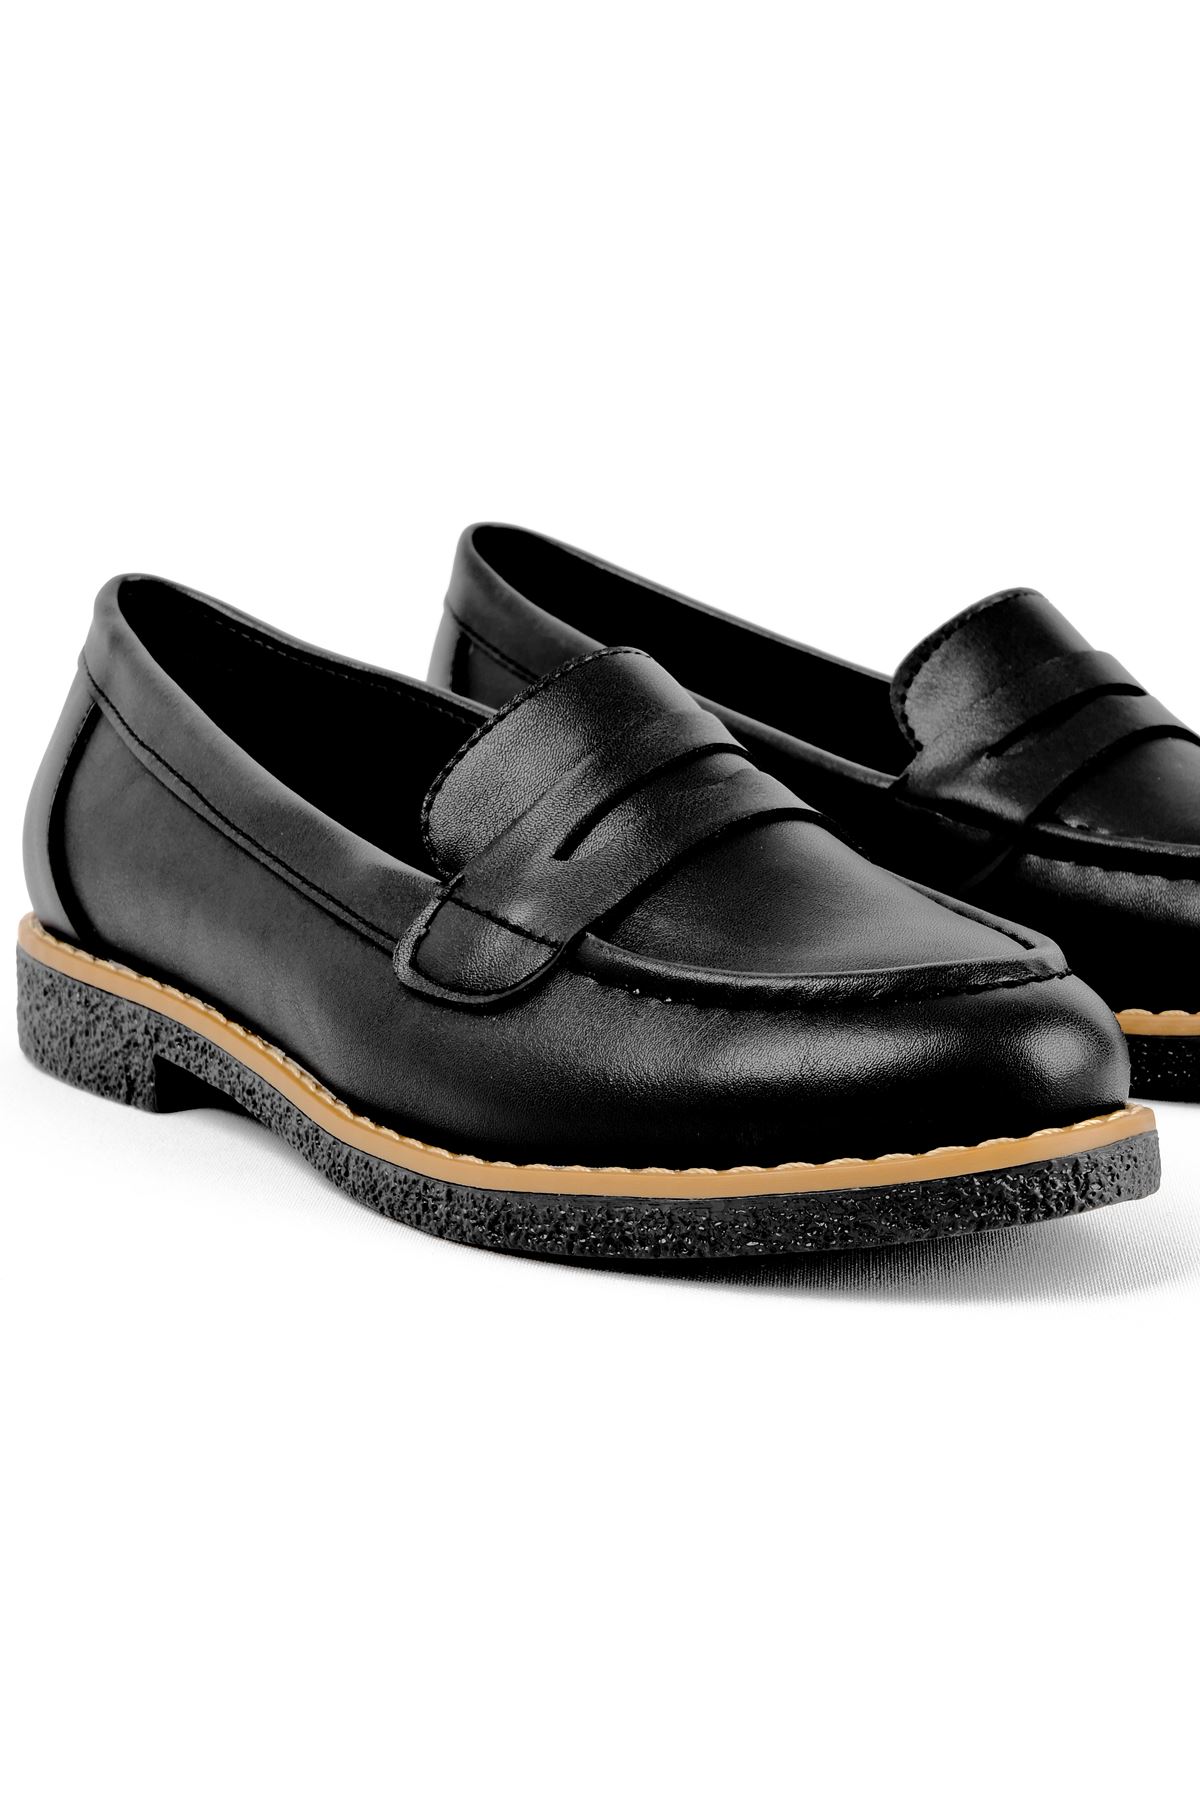 Aurora Kadın Günlük Ayakkabı-siyah